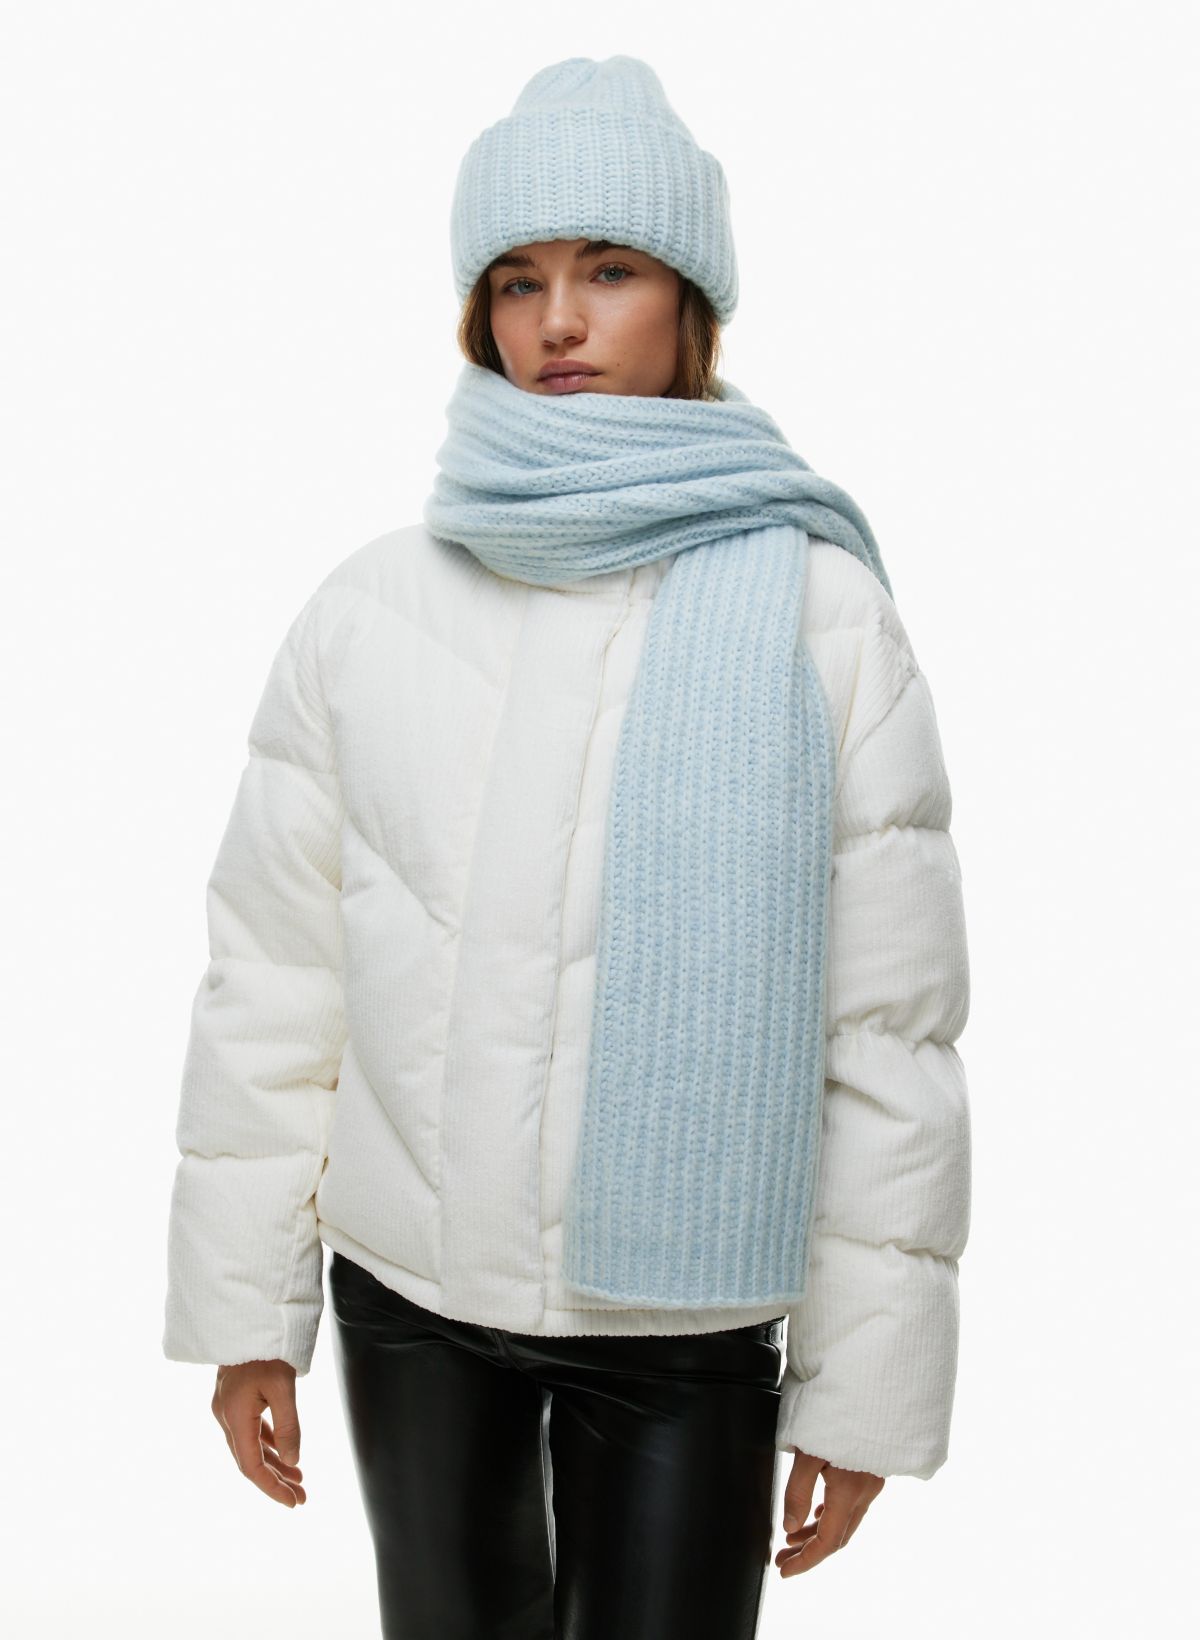 Stowe Vest  Merino wool clothing, Wool clothing, Wool vest